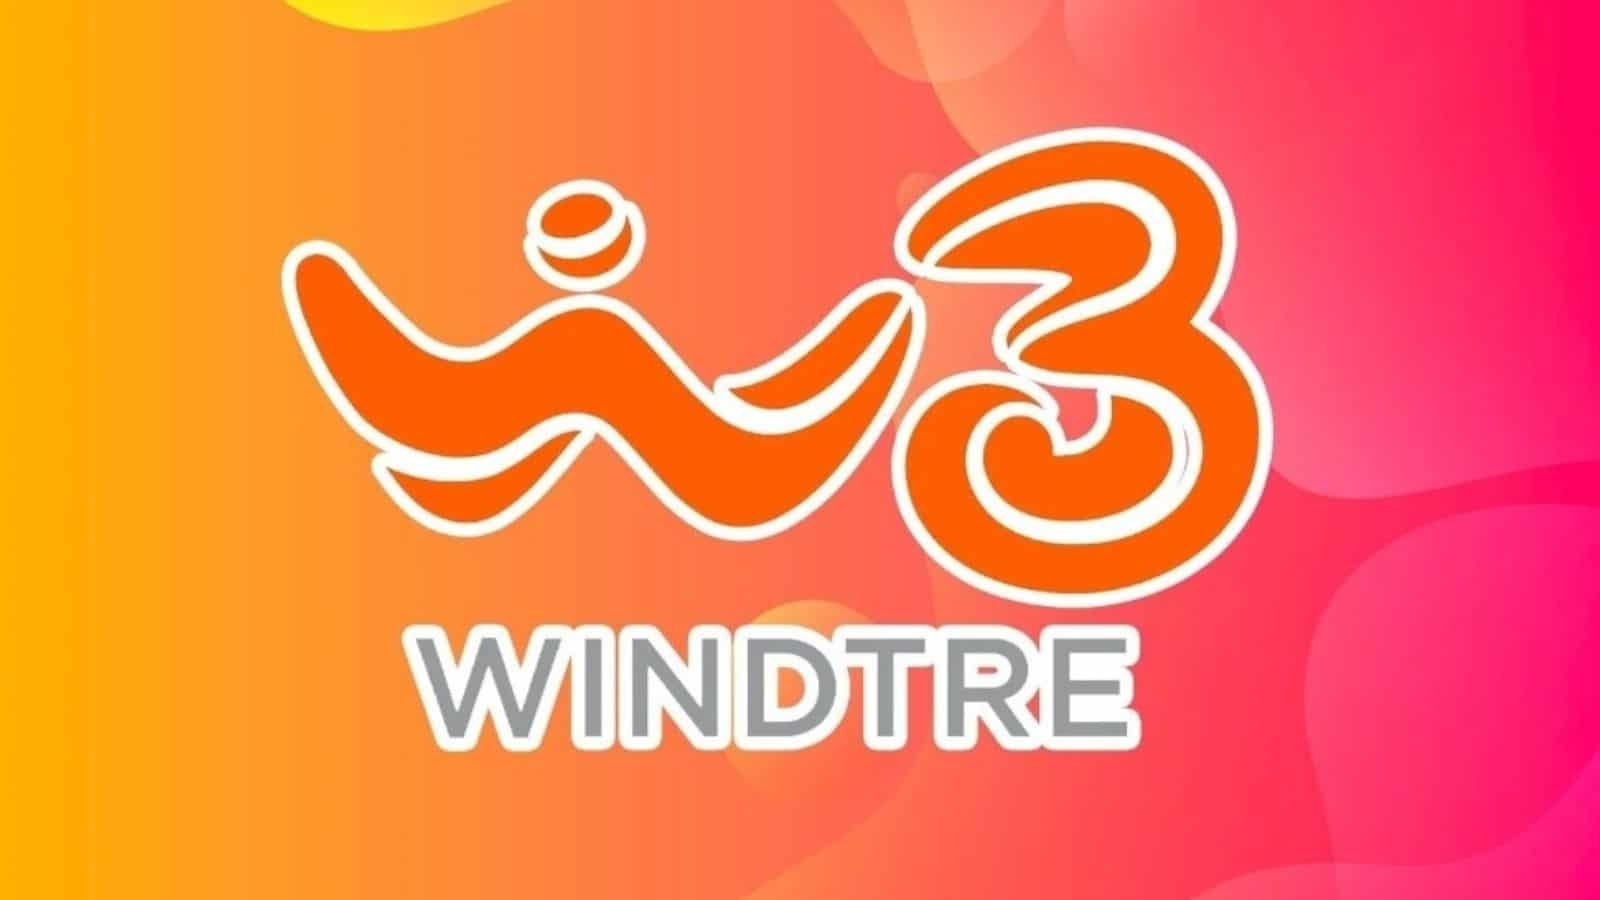 WindTre offerte super 